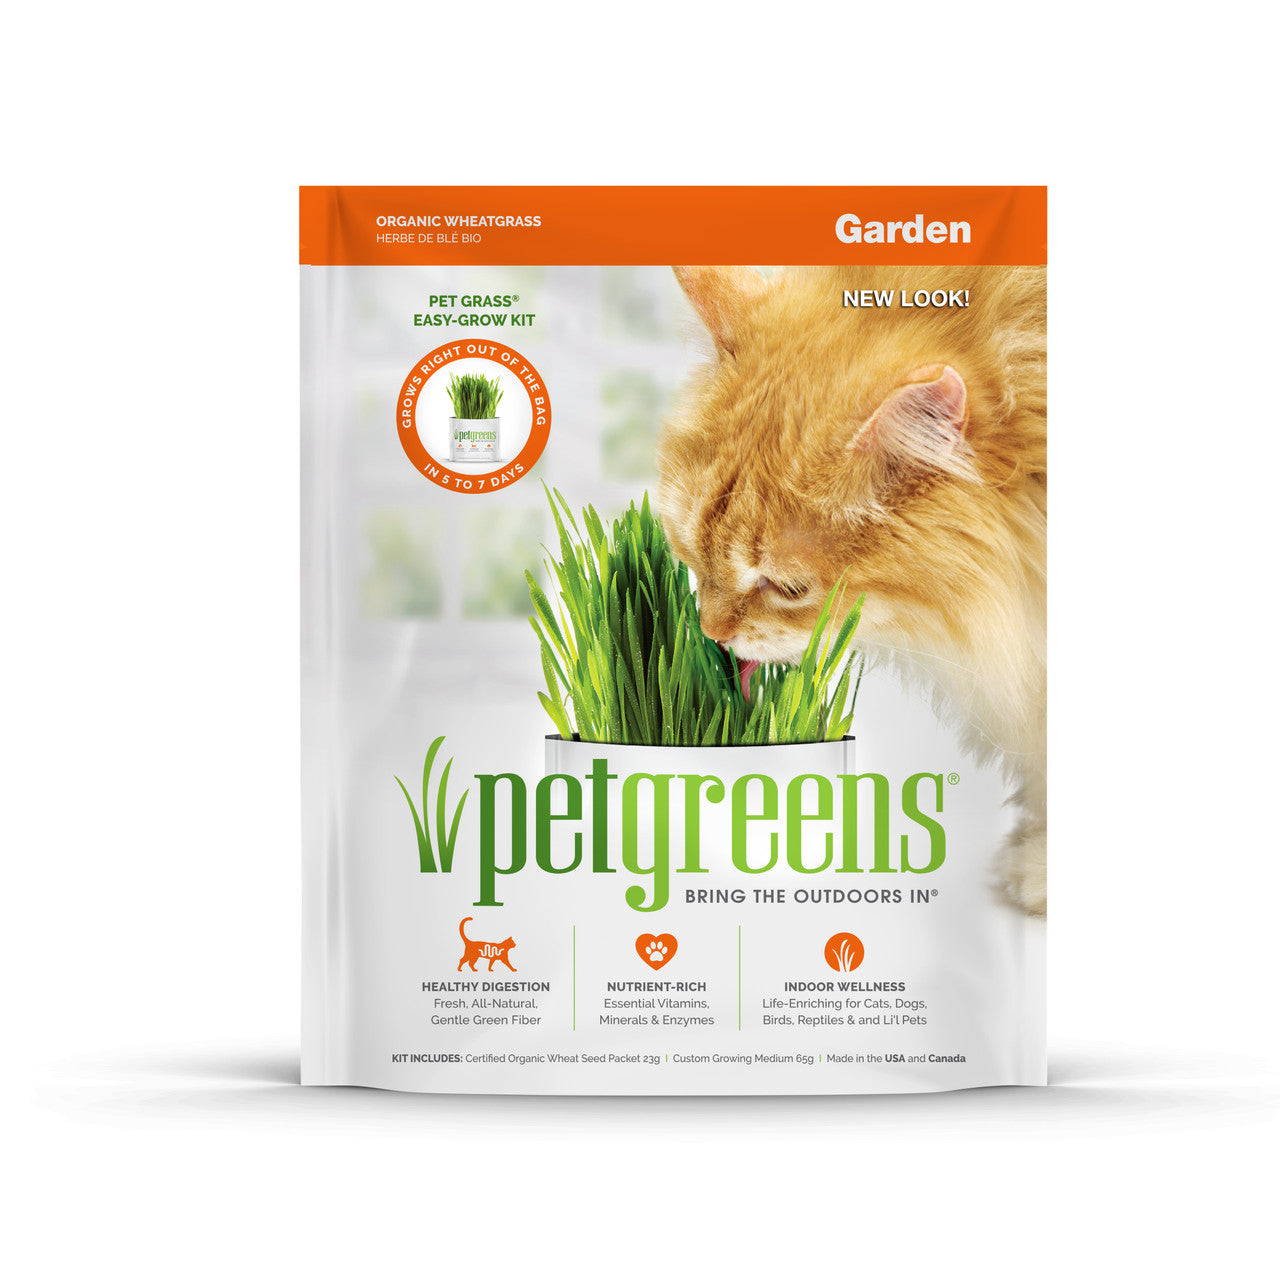 Pet Greens Garden Pet Grass Self-Grow Kit Organic Wheatgrass 3oz  (D)